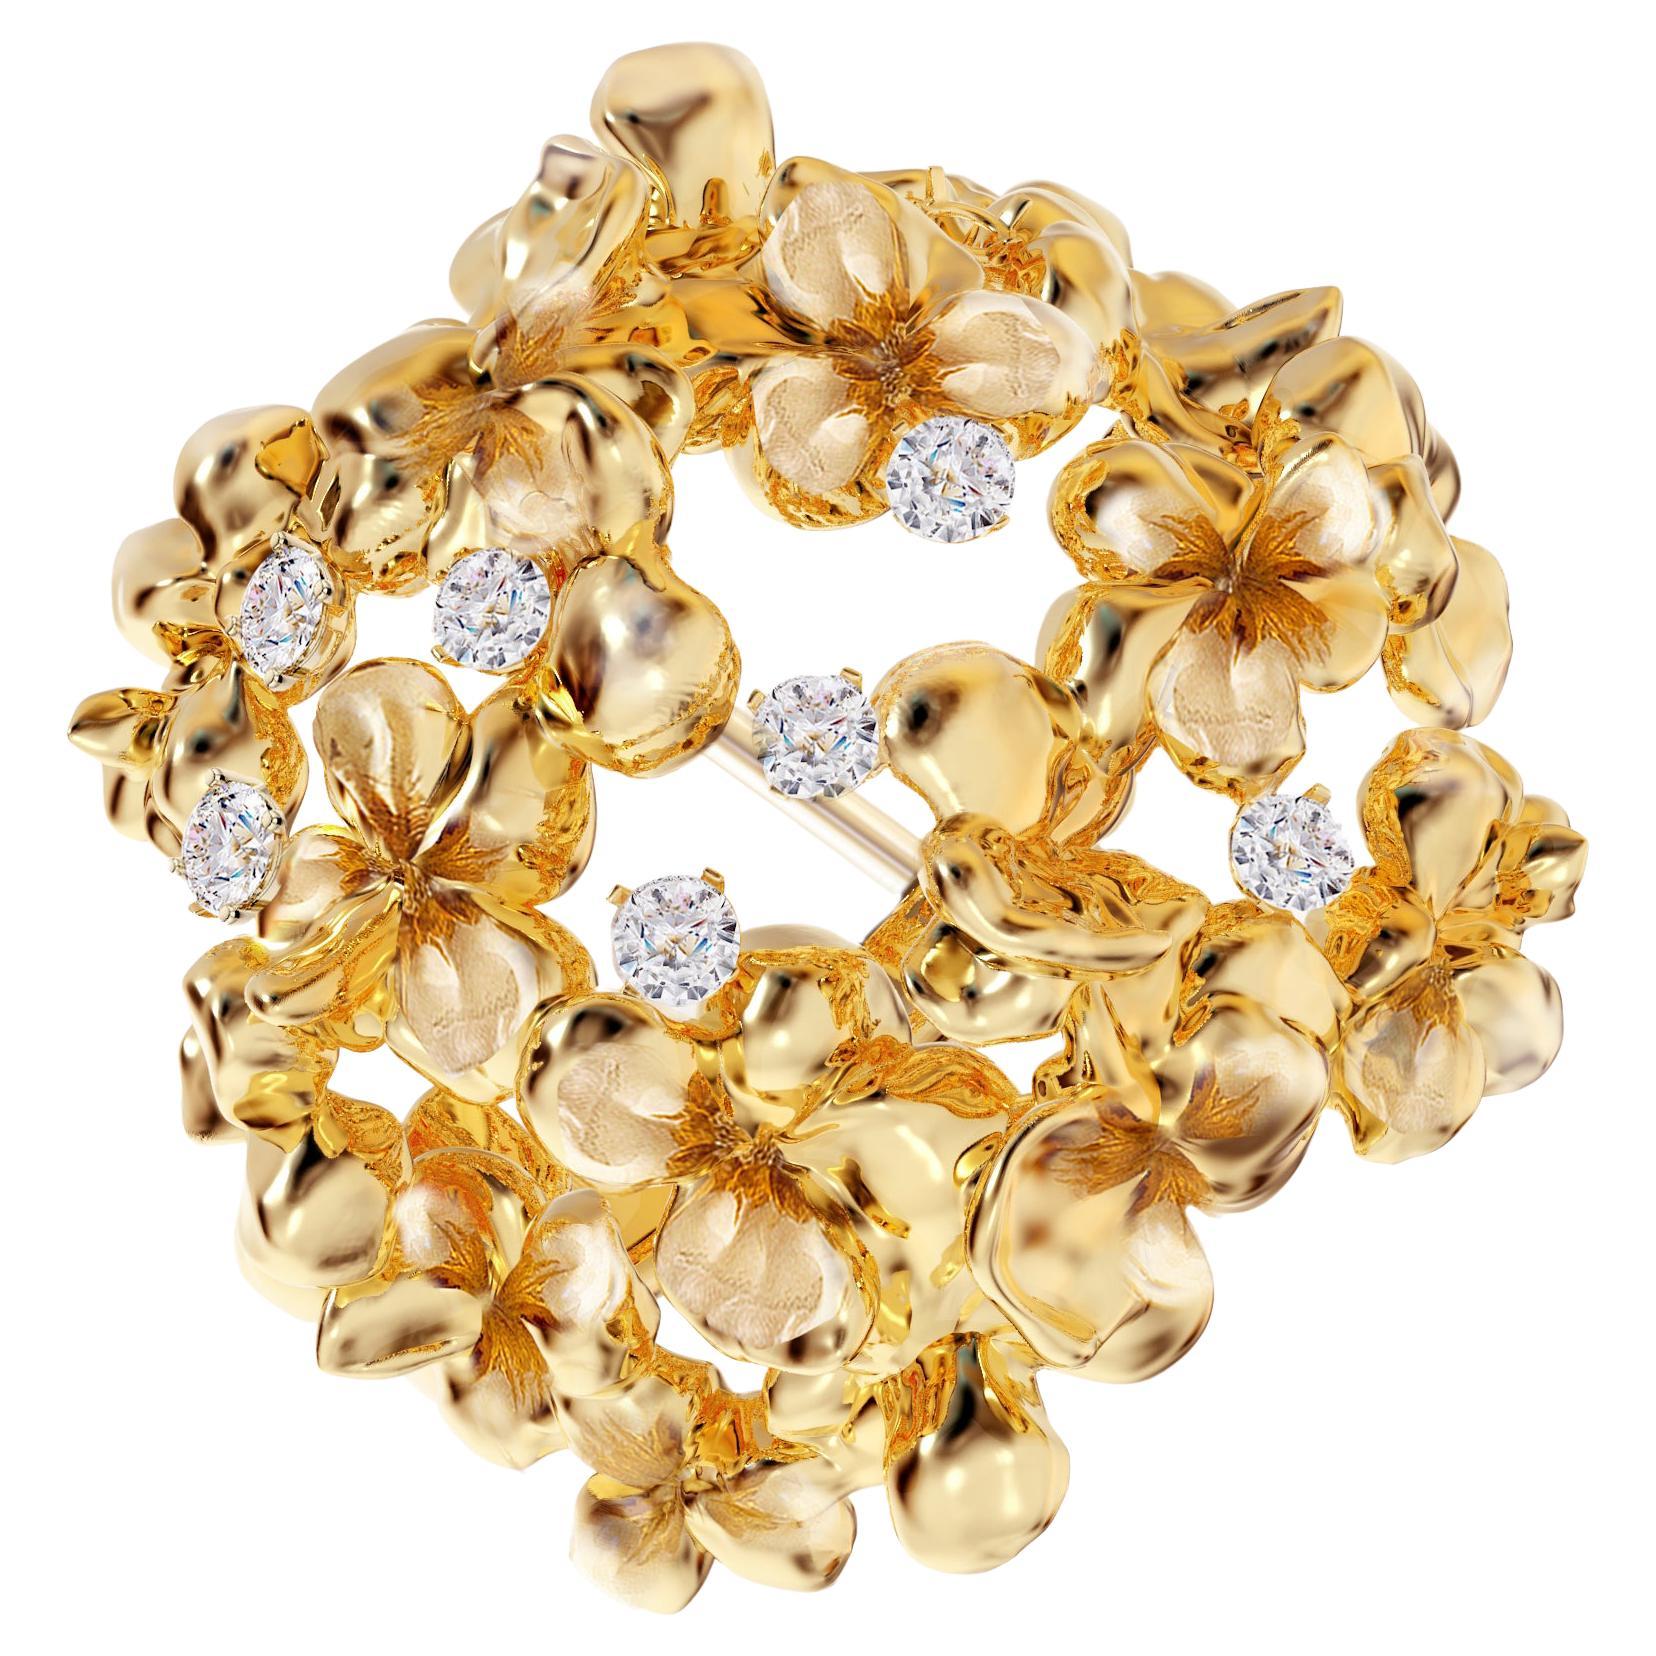 Dieser zeitgenössische Hortensia-Ohrstecker ist aus 18 Karat Gelbgold mit 14 runden natürlichen Diamanten, VS, F-G. Das skulpturale Design verleiht der Oberfläche des Goldes zusätzliche Akzente. Die Diamanten sorgen für das zarte Blinken. Diese